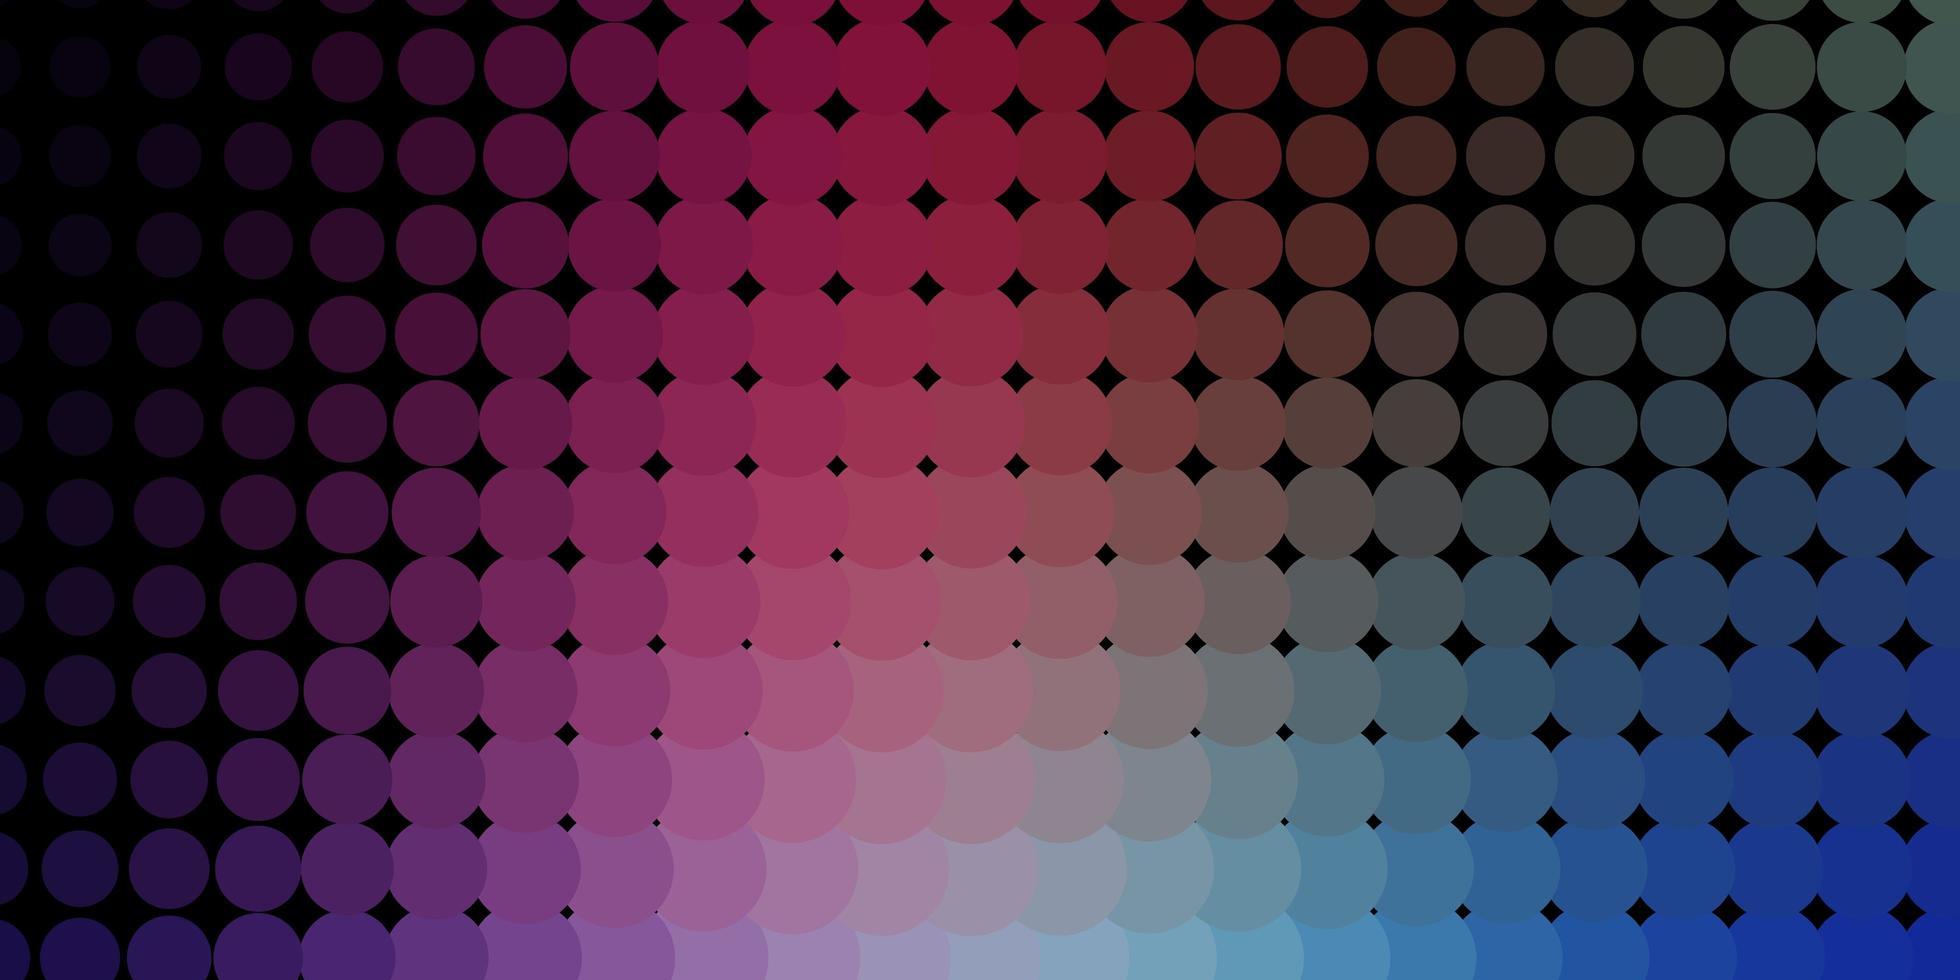 sfondo vettoriale rosa scuro, blu con macchie. illustrazione con set di brillanti sfere astratte colorate. modello per siti web.